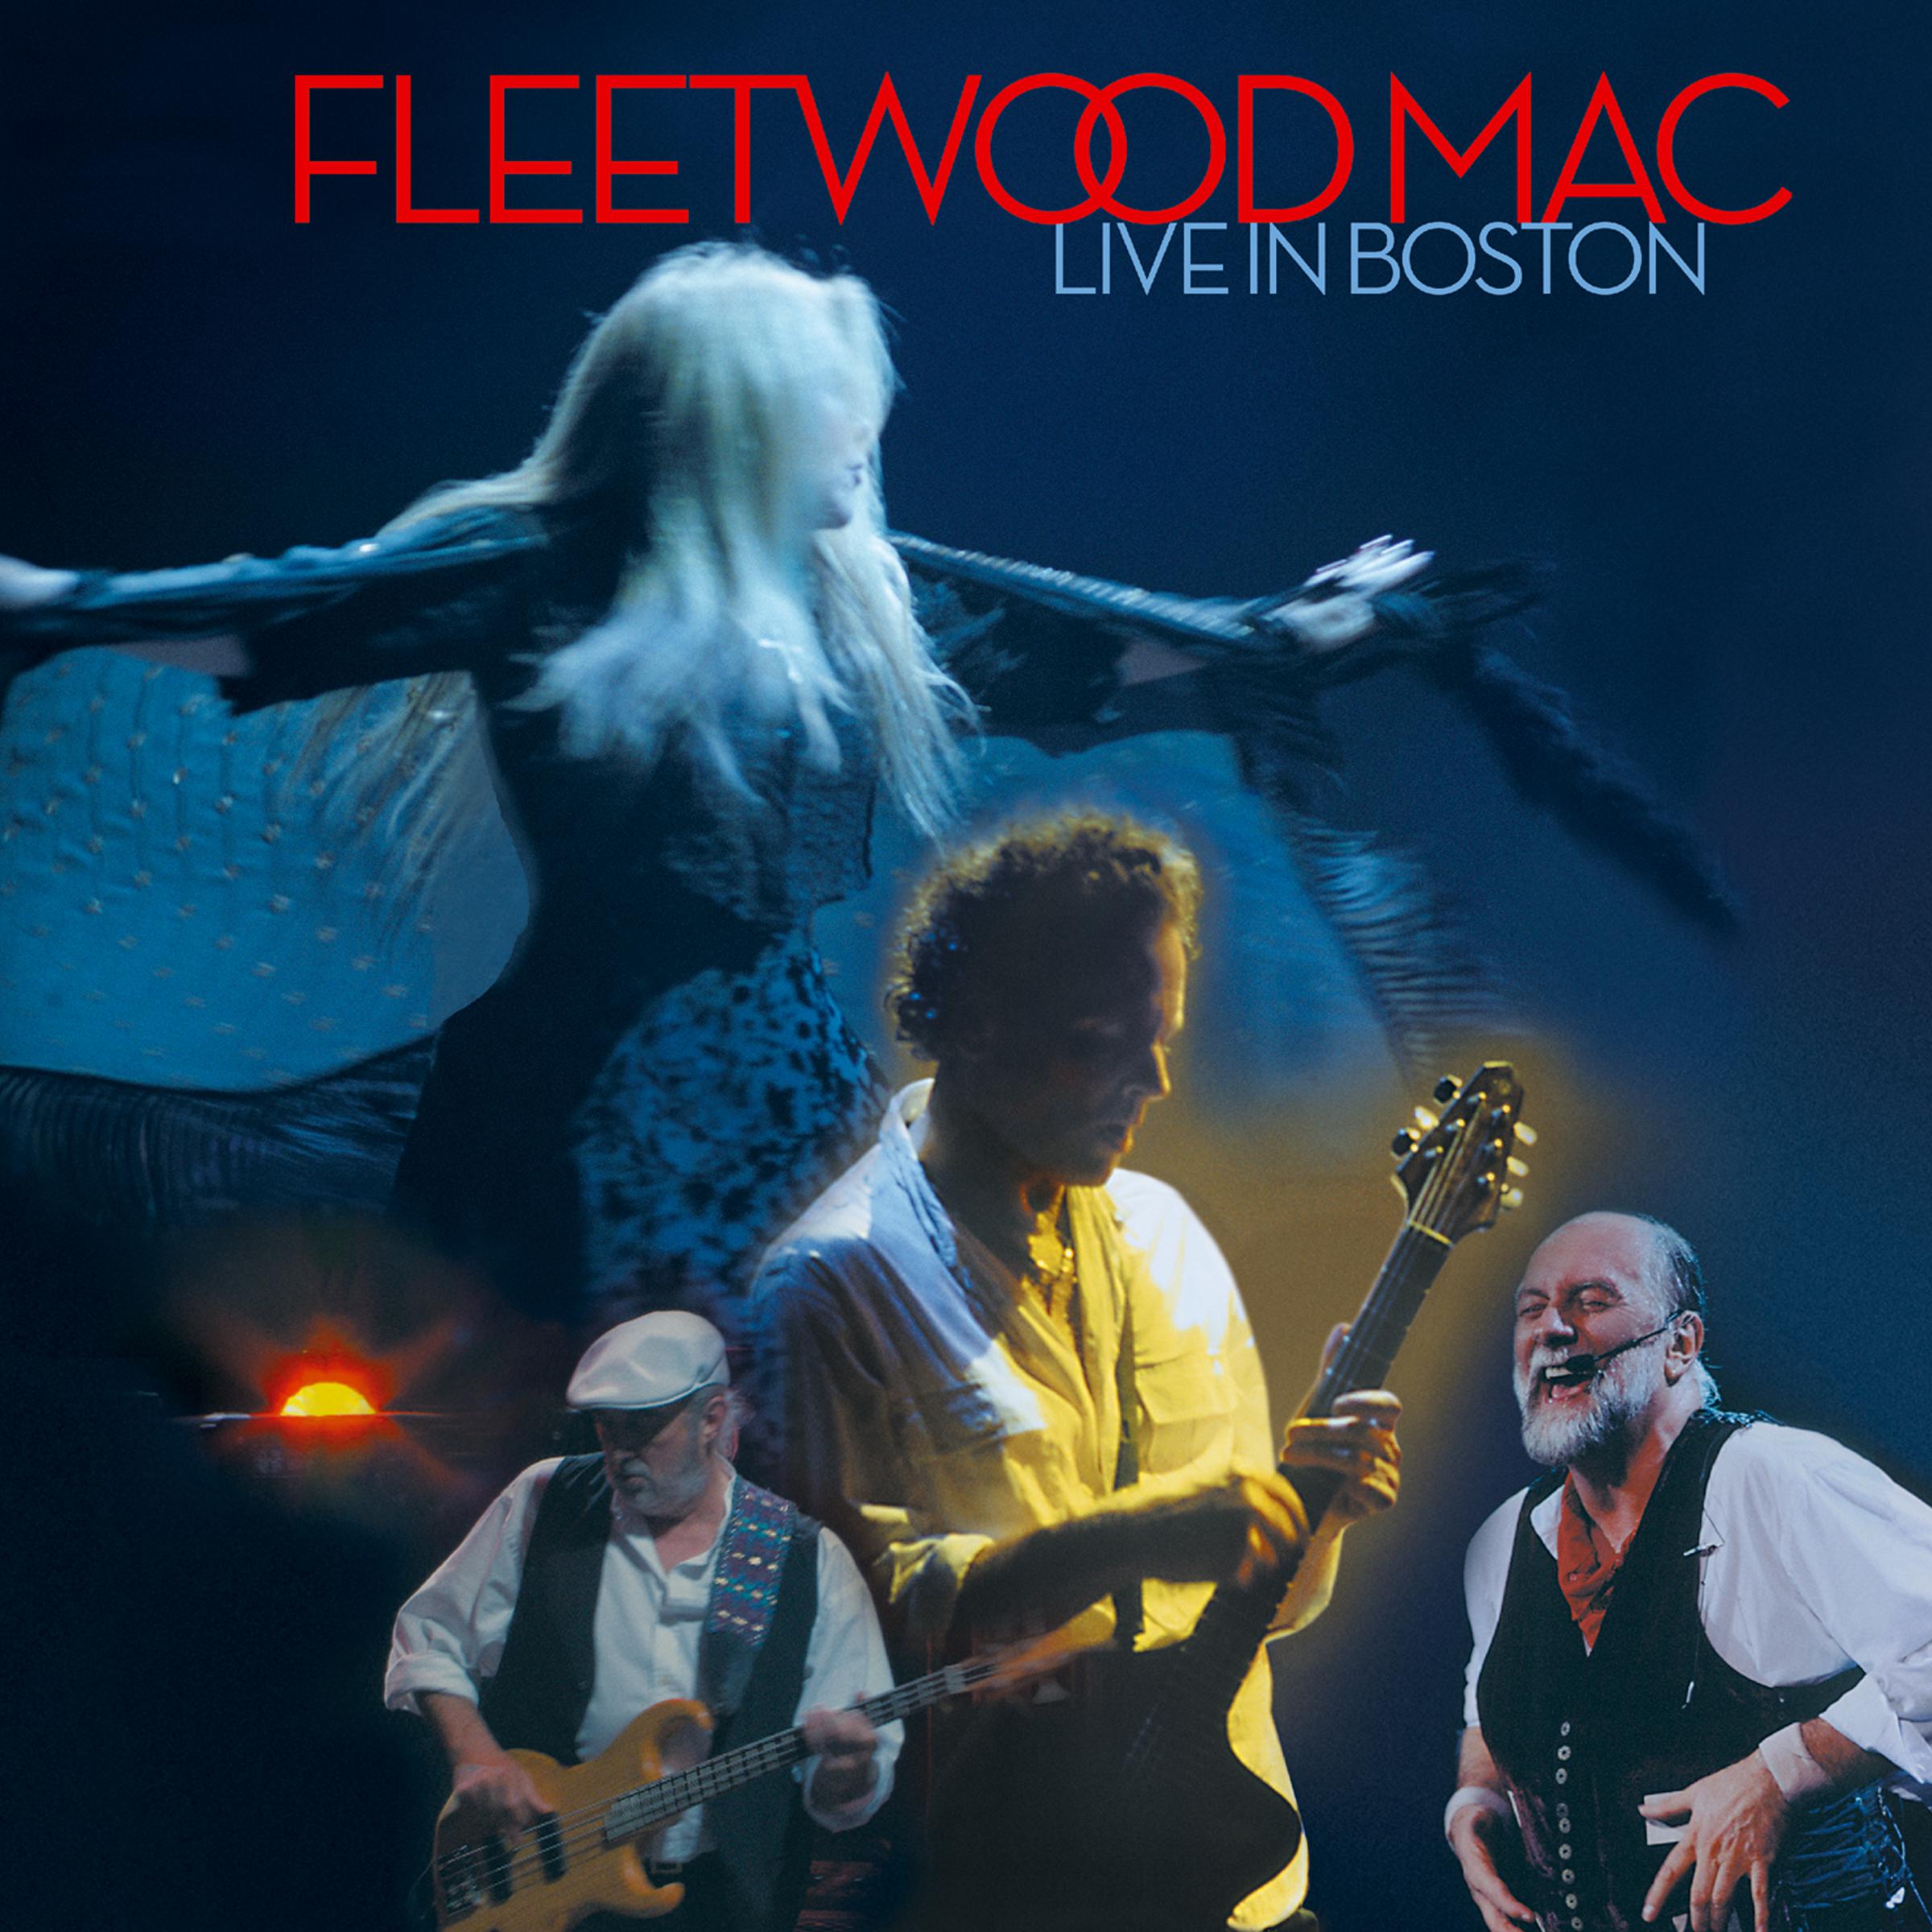 fleetwood mac landslide mp3 download